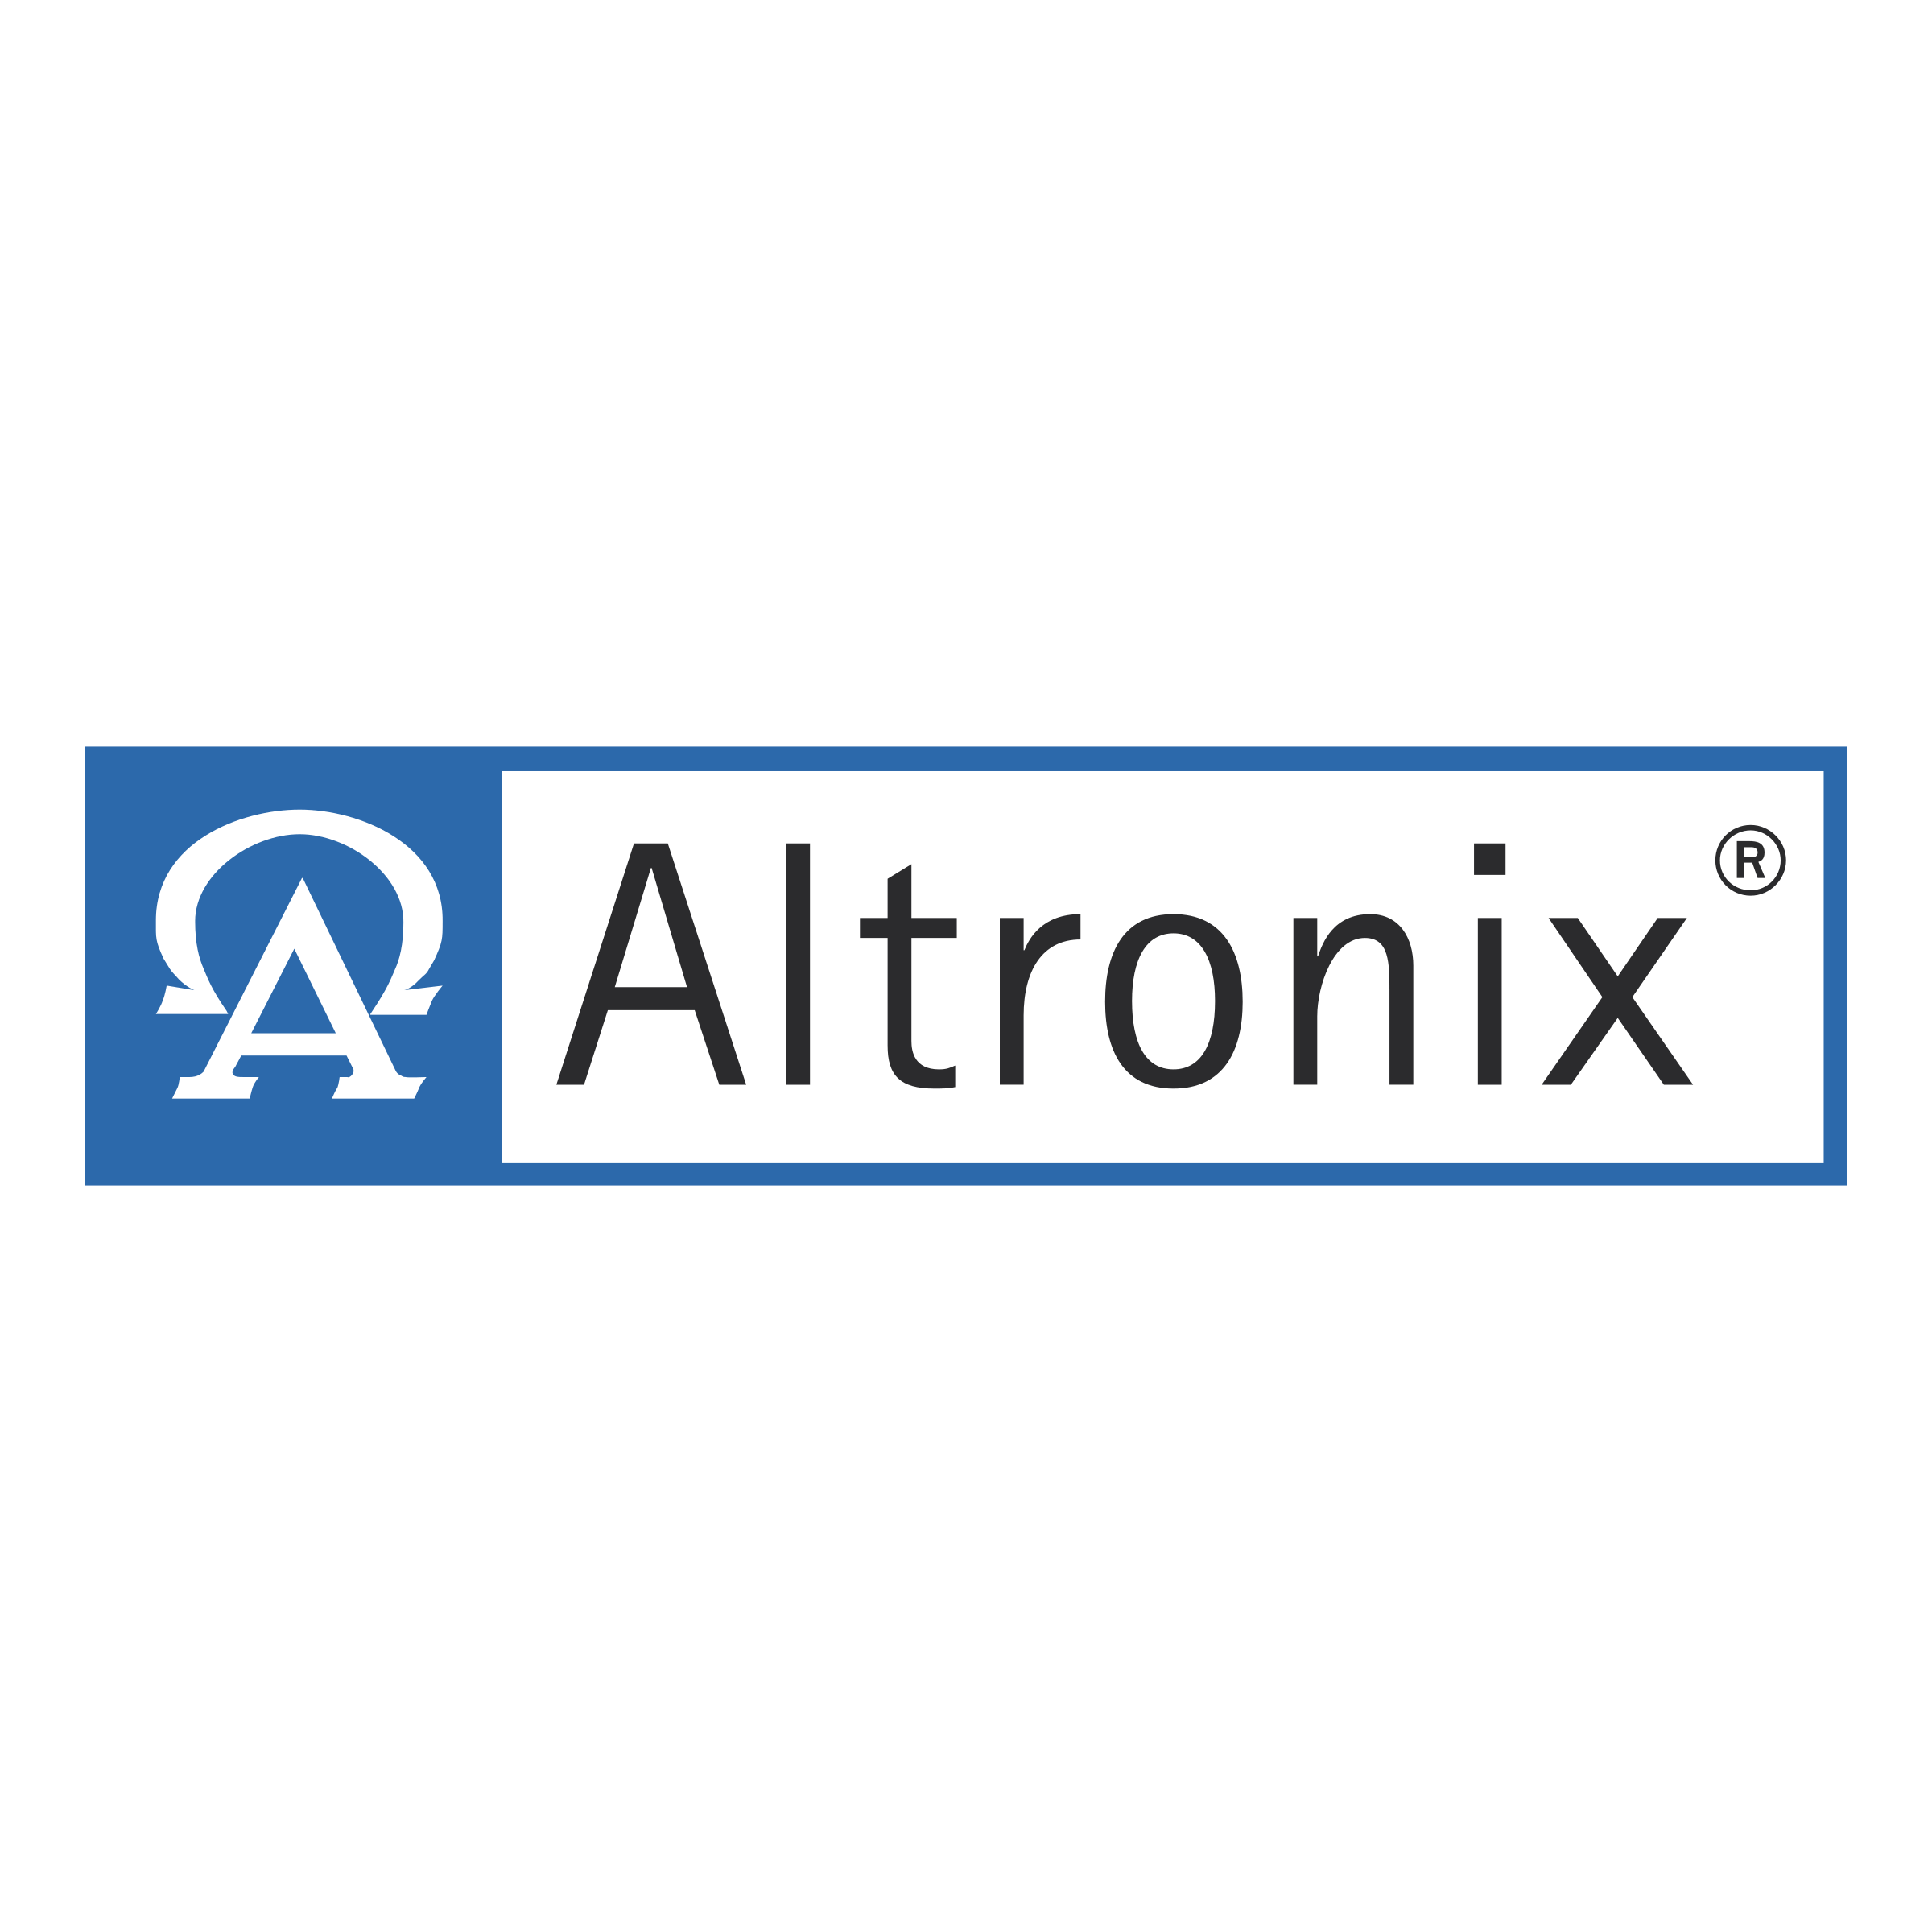 Altronix Logo - Altronix Logo PNG Transparent & SVG Vector